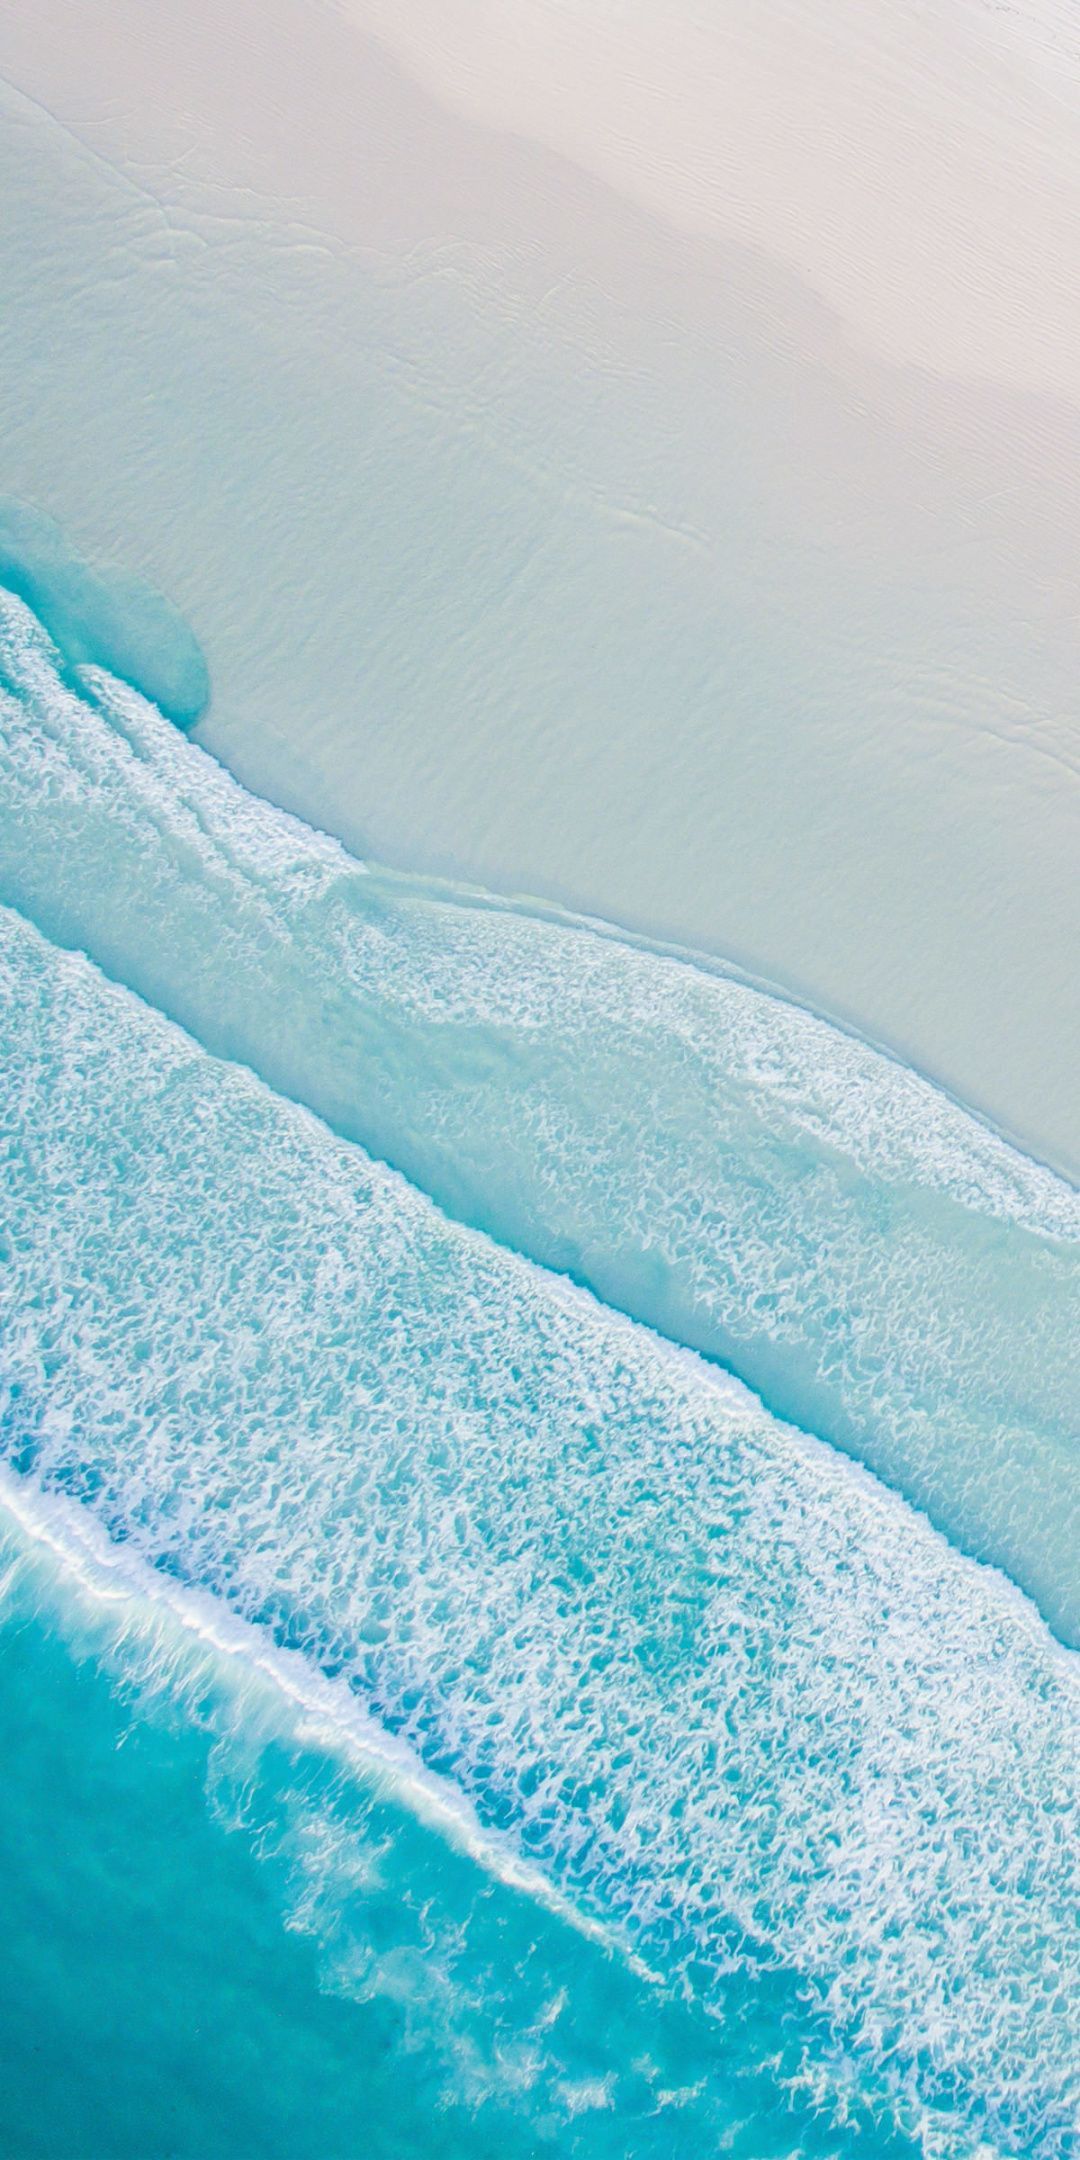 Beach Wallpaper.#wallpaperideas. Beach wallpaper, Ocean wallpaper, Beach aerial view